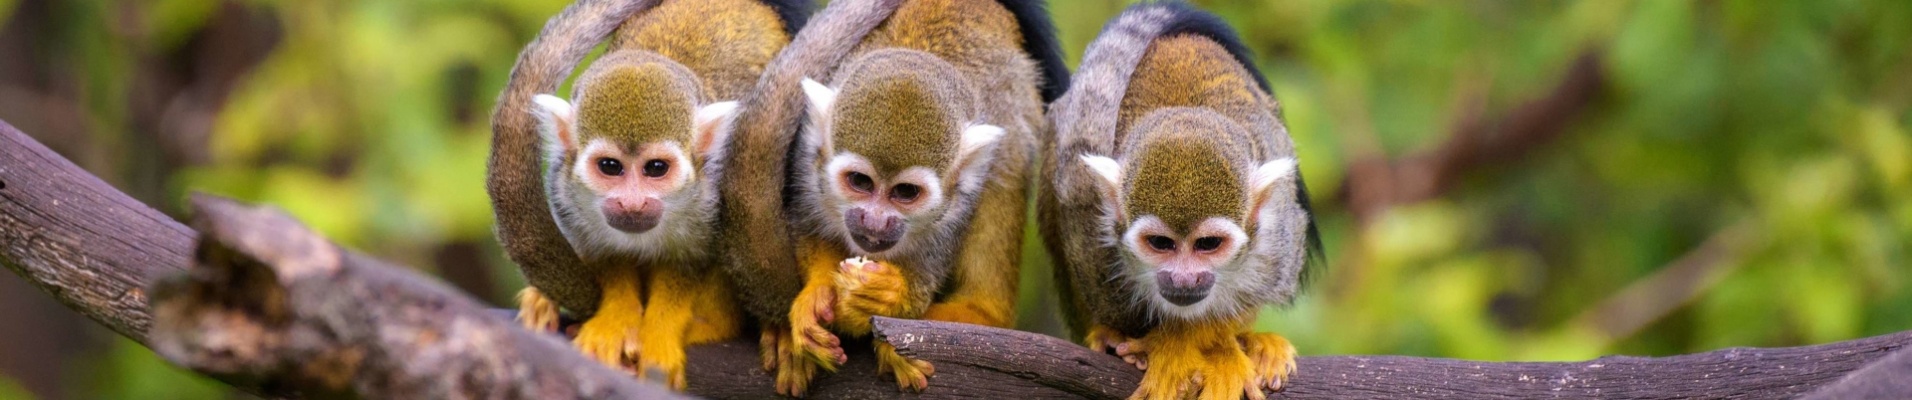 Squirrel-singe-faune-colombie